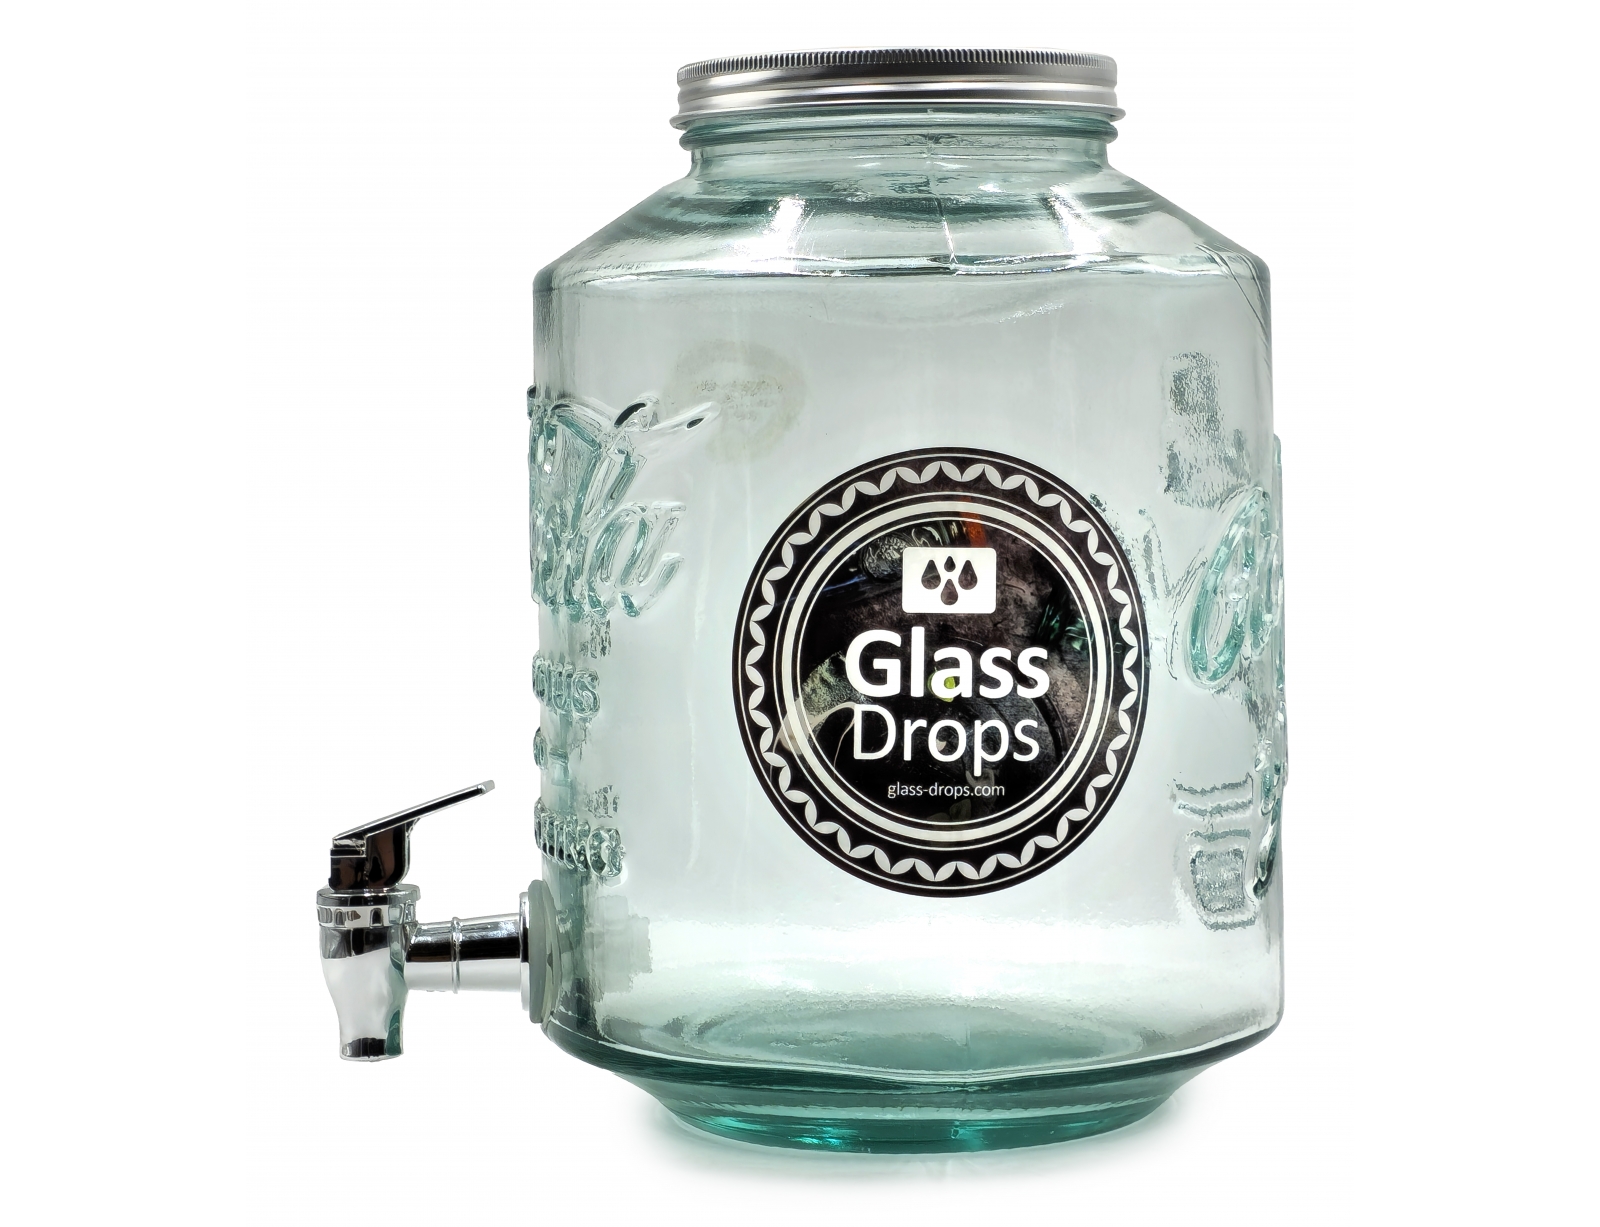 Εικόνα Δοχείο Glass Drops Coca Cola (9016G20) Mε καπάκι και βρυσάκι, Aπό 100% ανακυκλωμένο γυαλί, Xωρητικότητας 5L, Διαστάσεων Ø 20 x Υ 26 cm